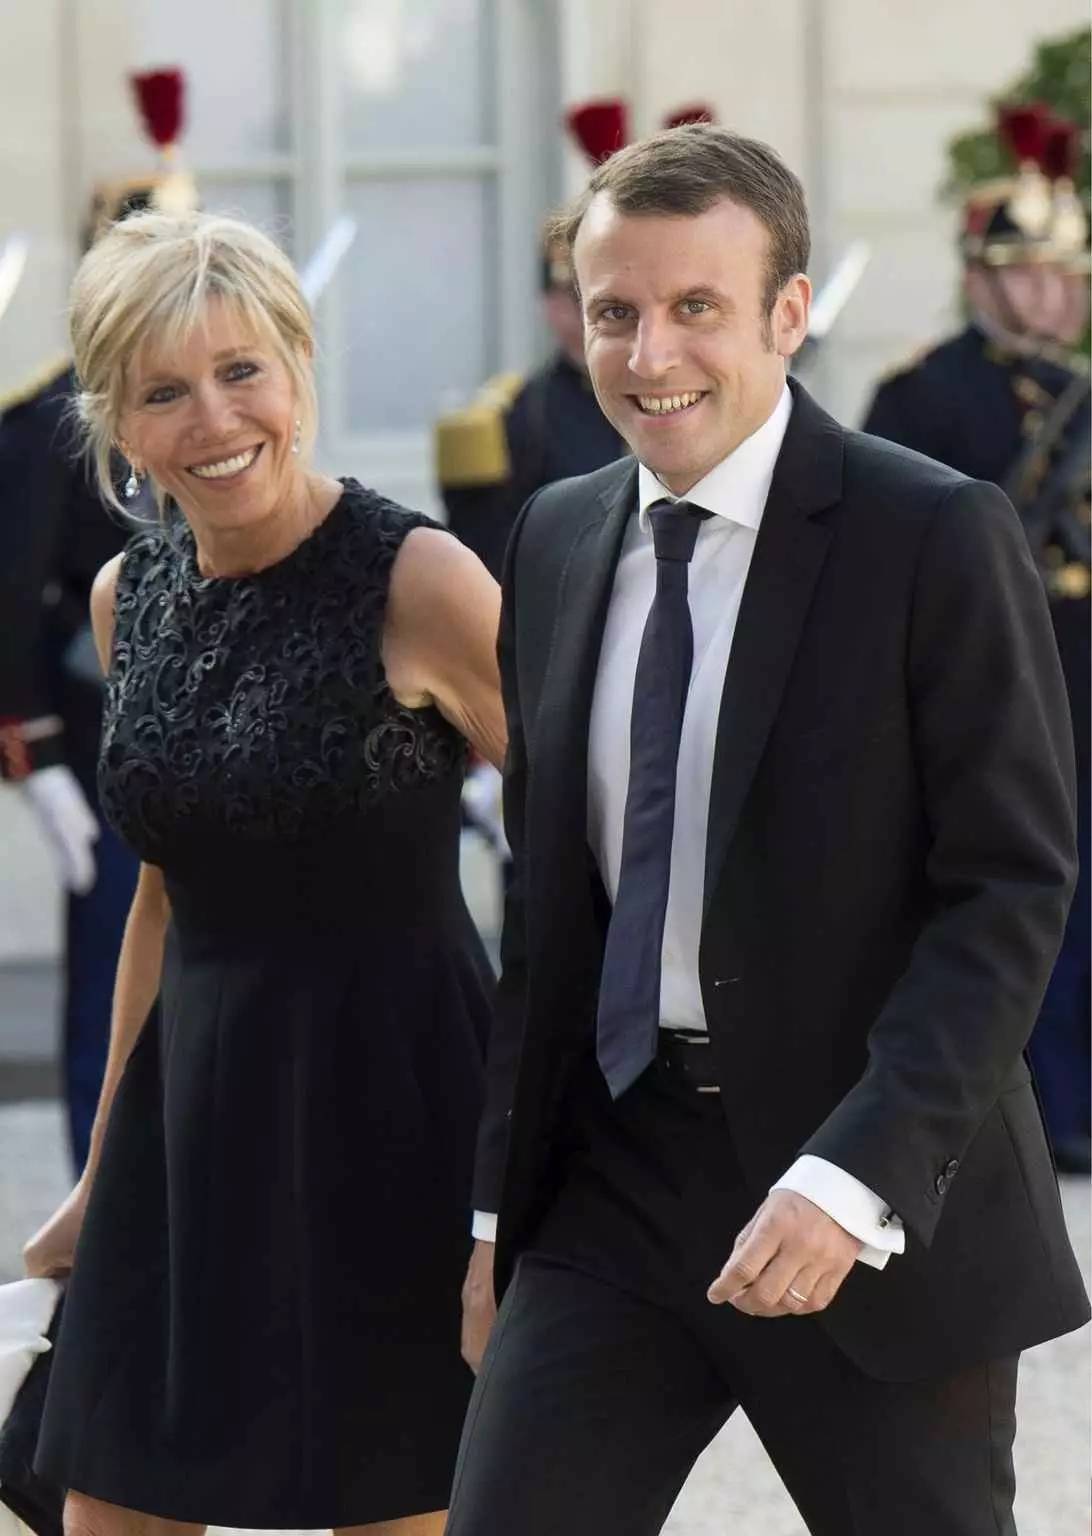 扒出来了!法国新总统夫人戴的是这枚手表!